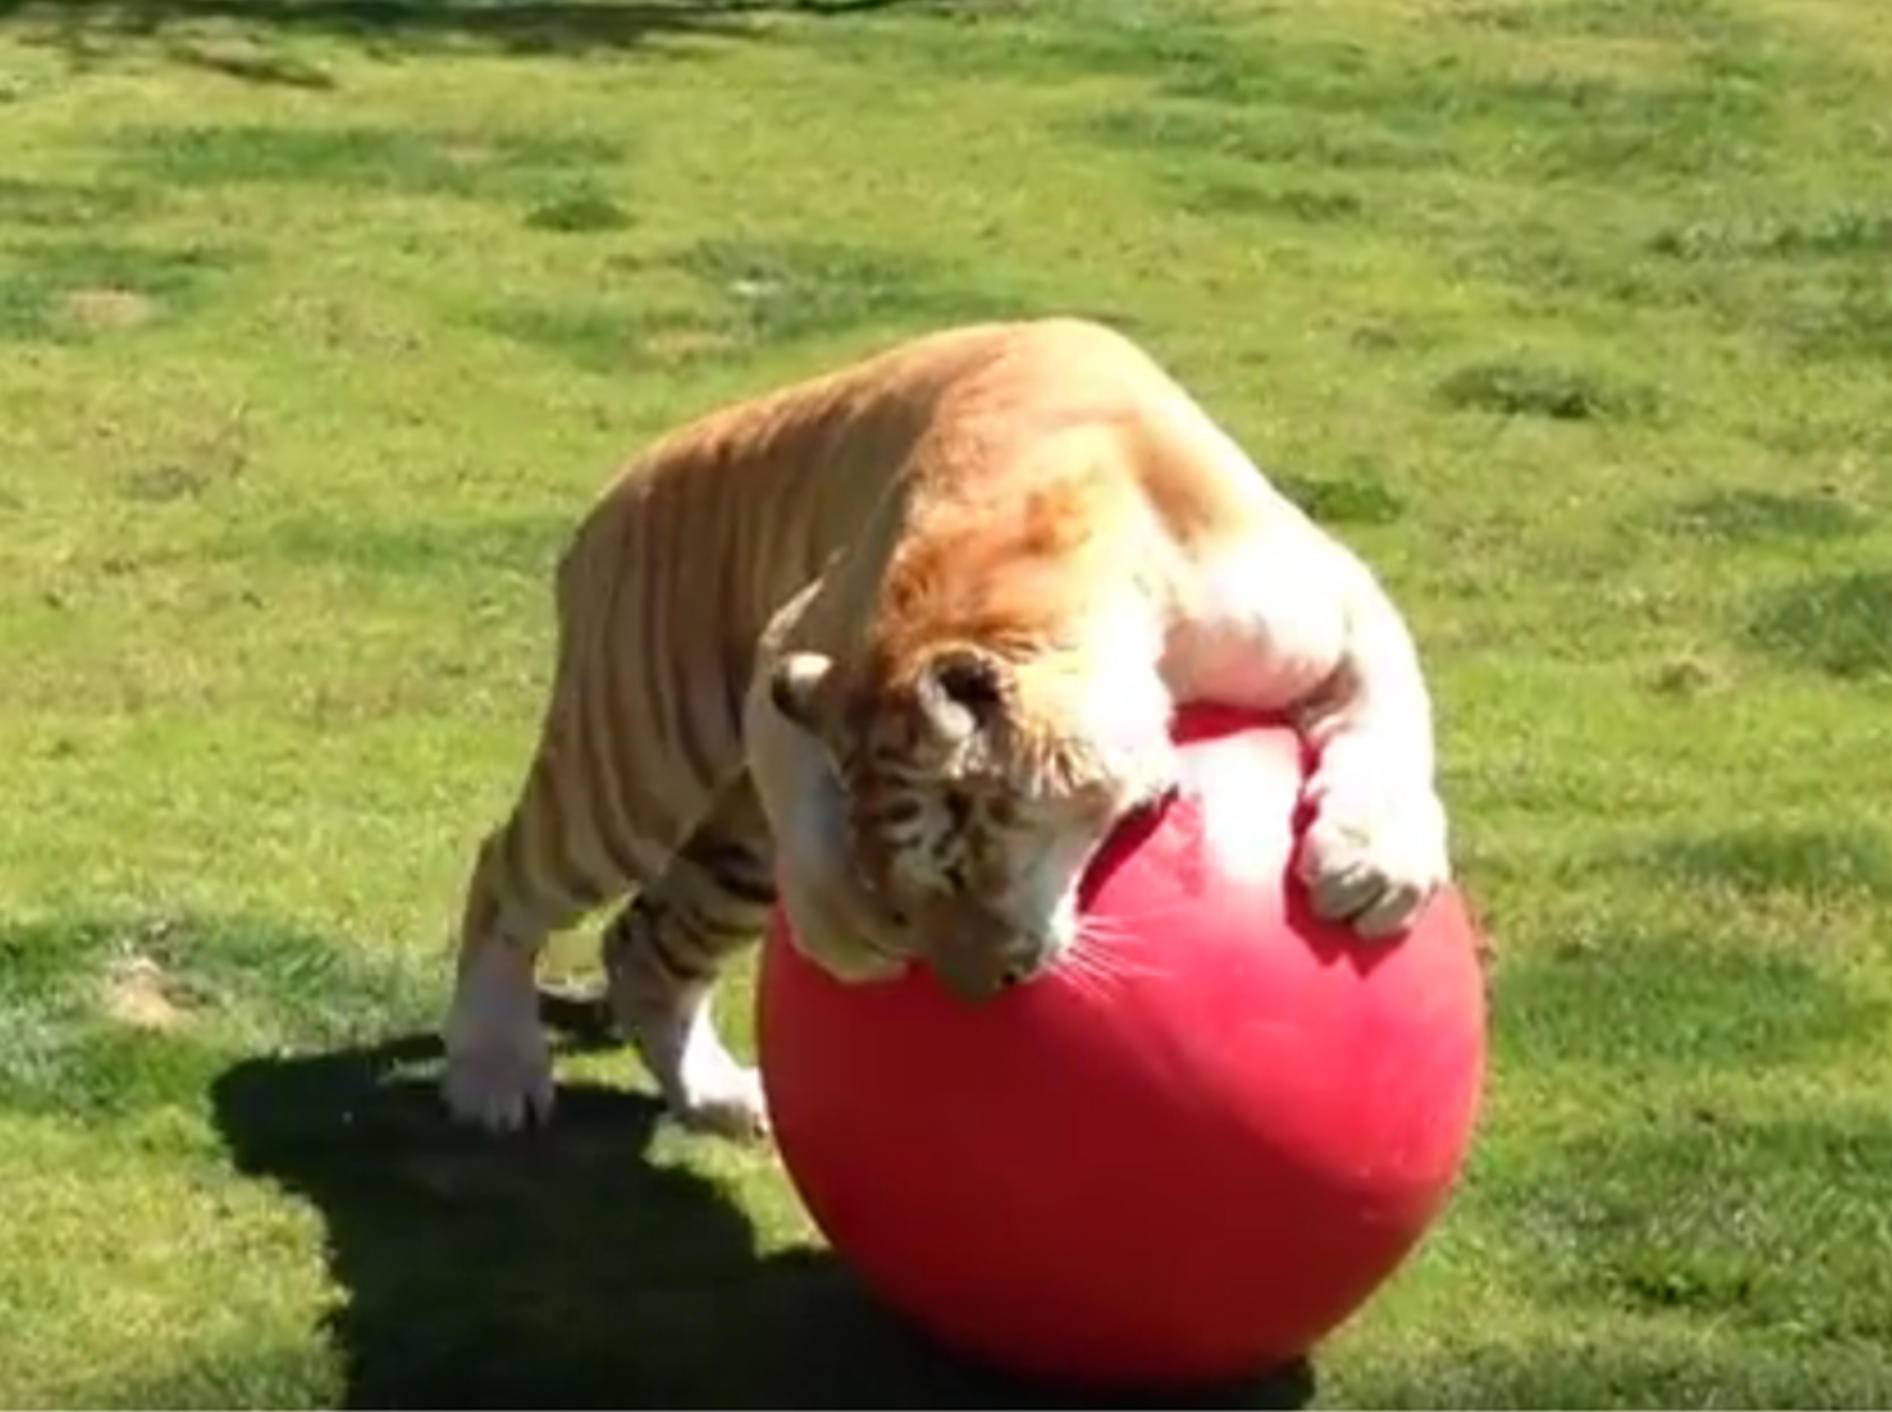 Spielen macht Spaß, findet dieser Tiger – YouTube / Black Jaguar White Tiger Foundation